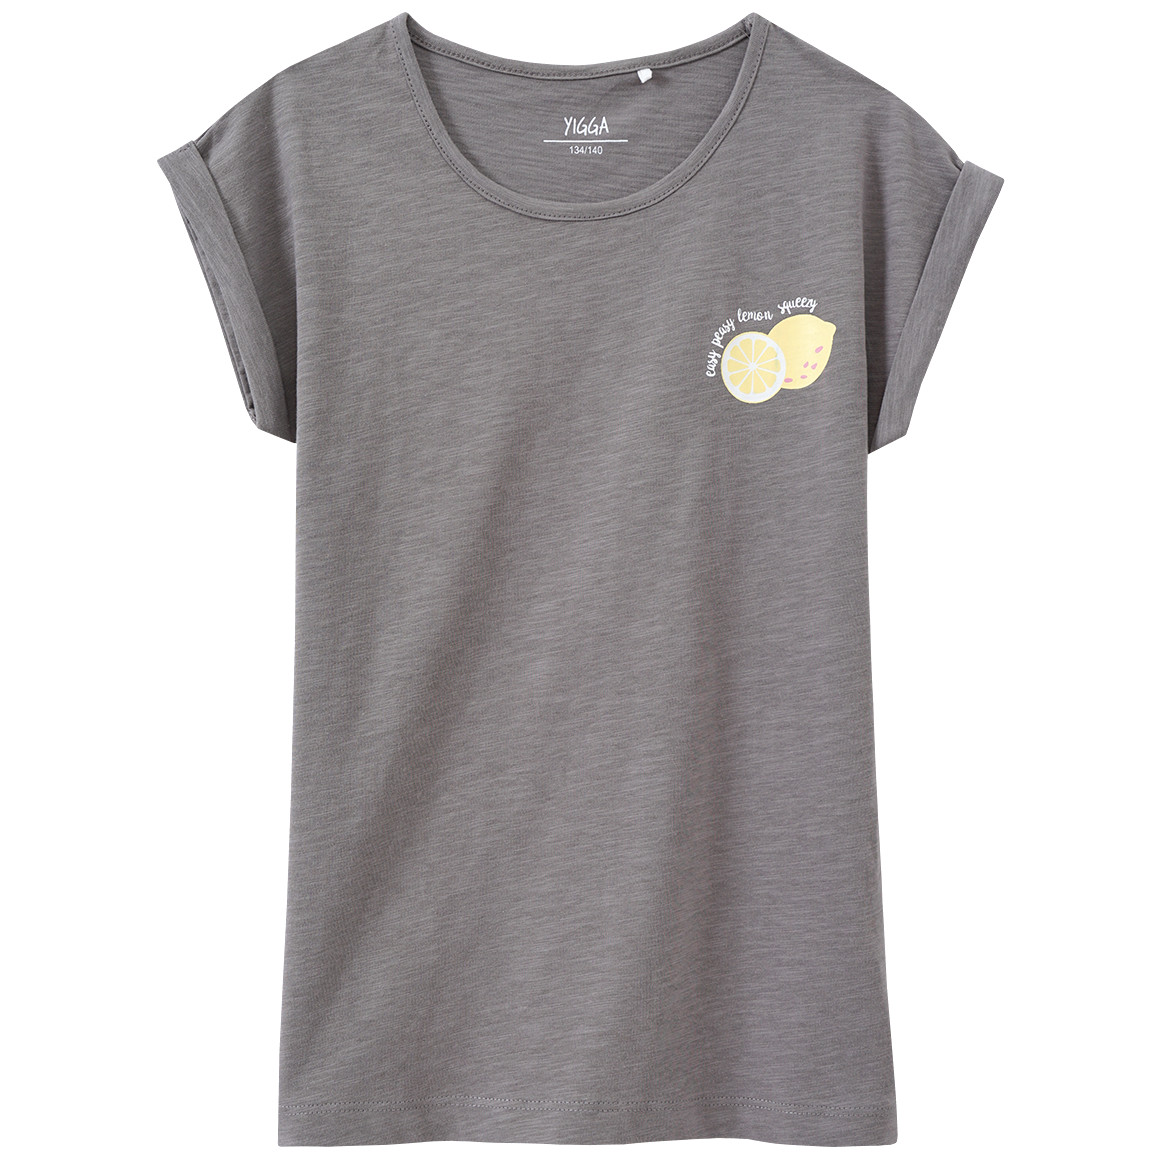 Mädchen T-Shirt mit Zitronen-Print von Yigga